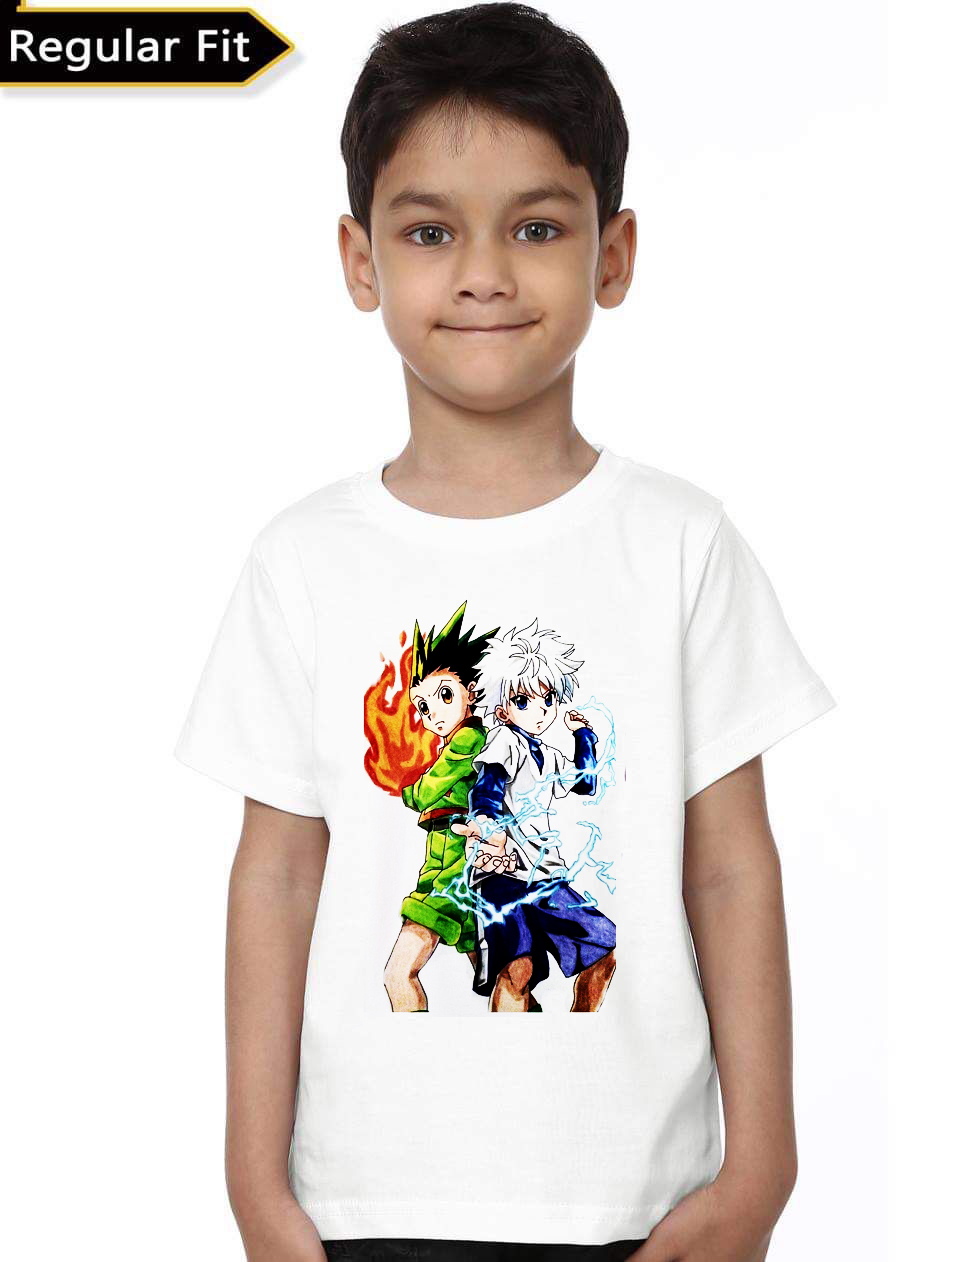 Gon Killua Kids T-Shirt - Shark Shirts